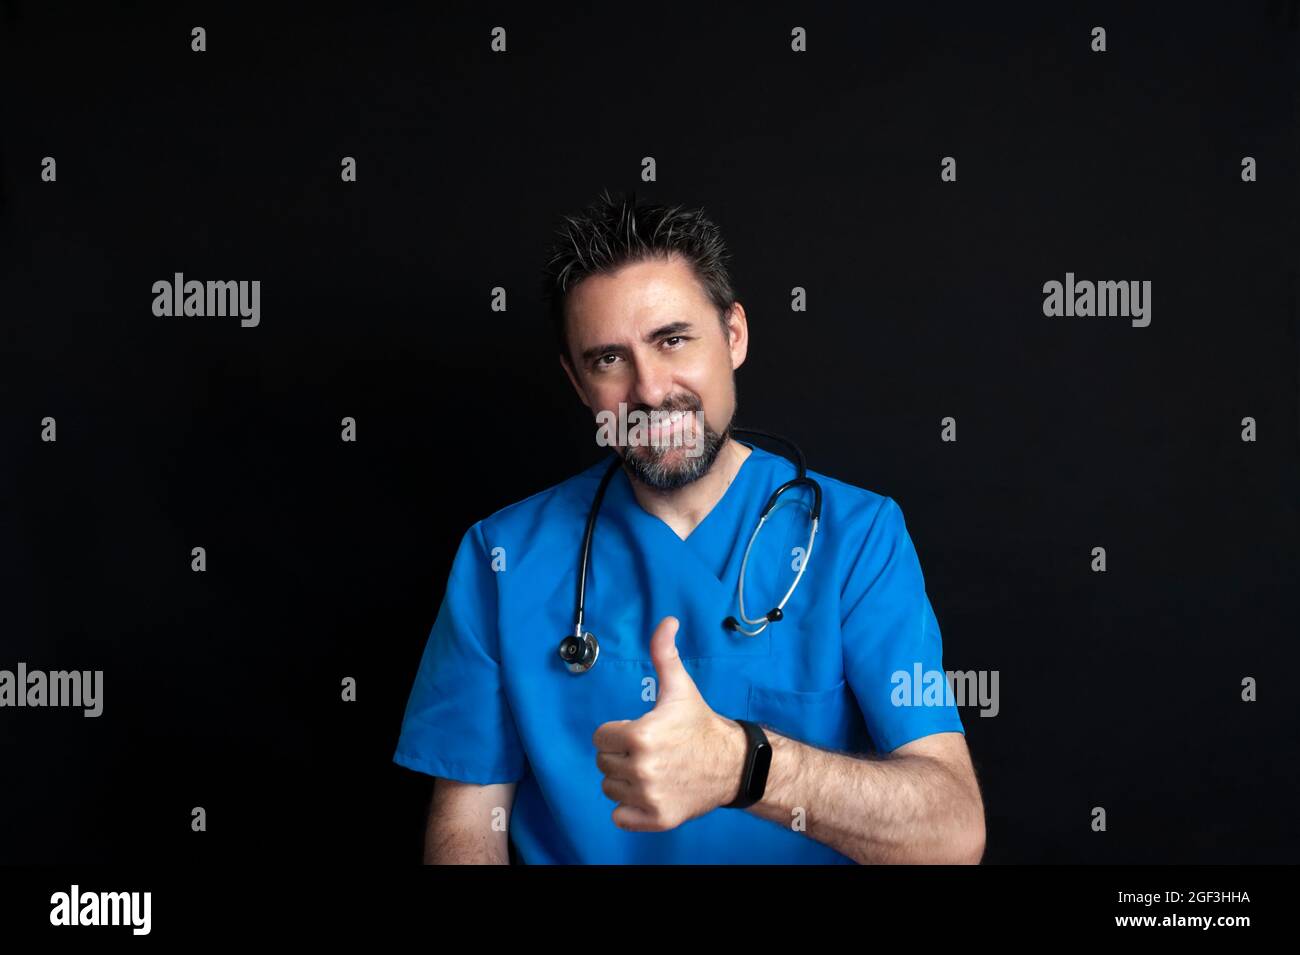 Un médecin vêtu d'un uniforme bleu d'hôpital, sombre et barbu, portant un stéthoscope autour de son cou, souriant et donnant un pouce vers le haut indiquant t Banque D'Images